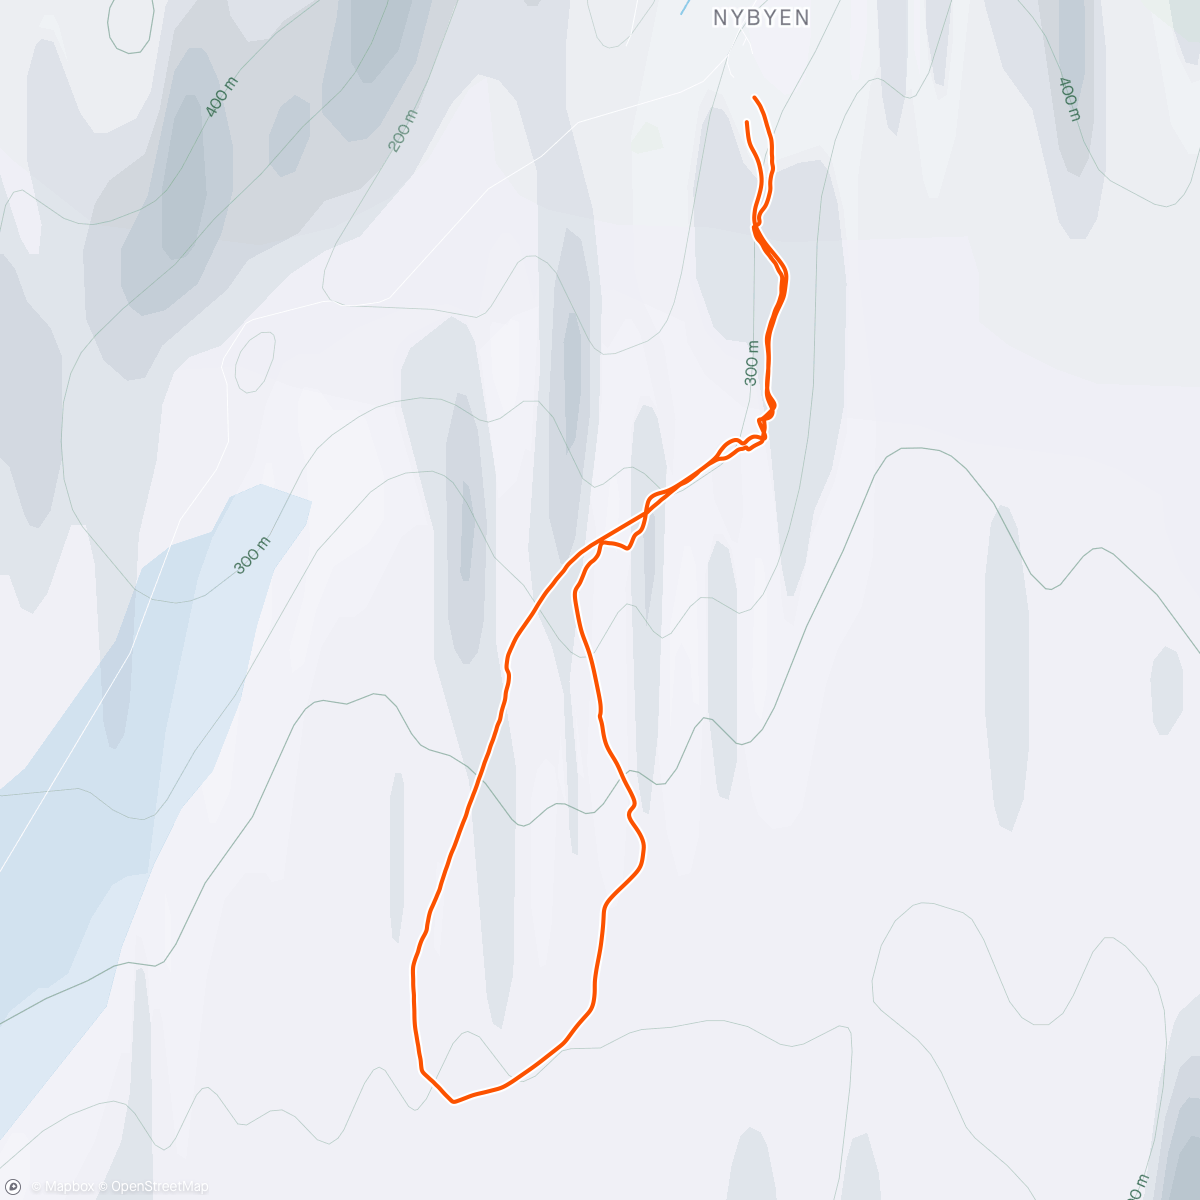 アクティビティ「Ski touring gear test」の地図